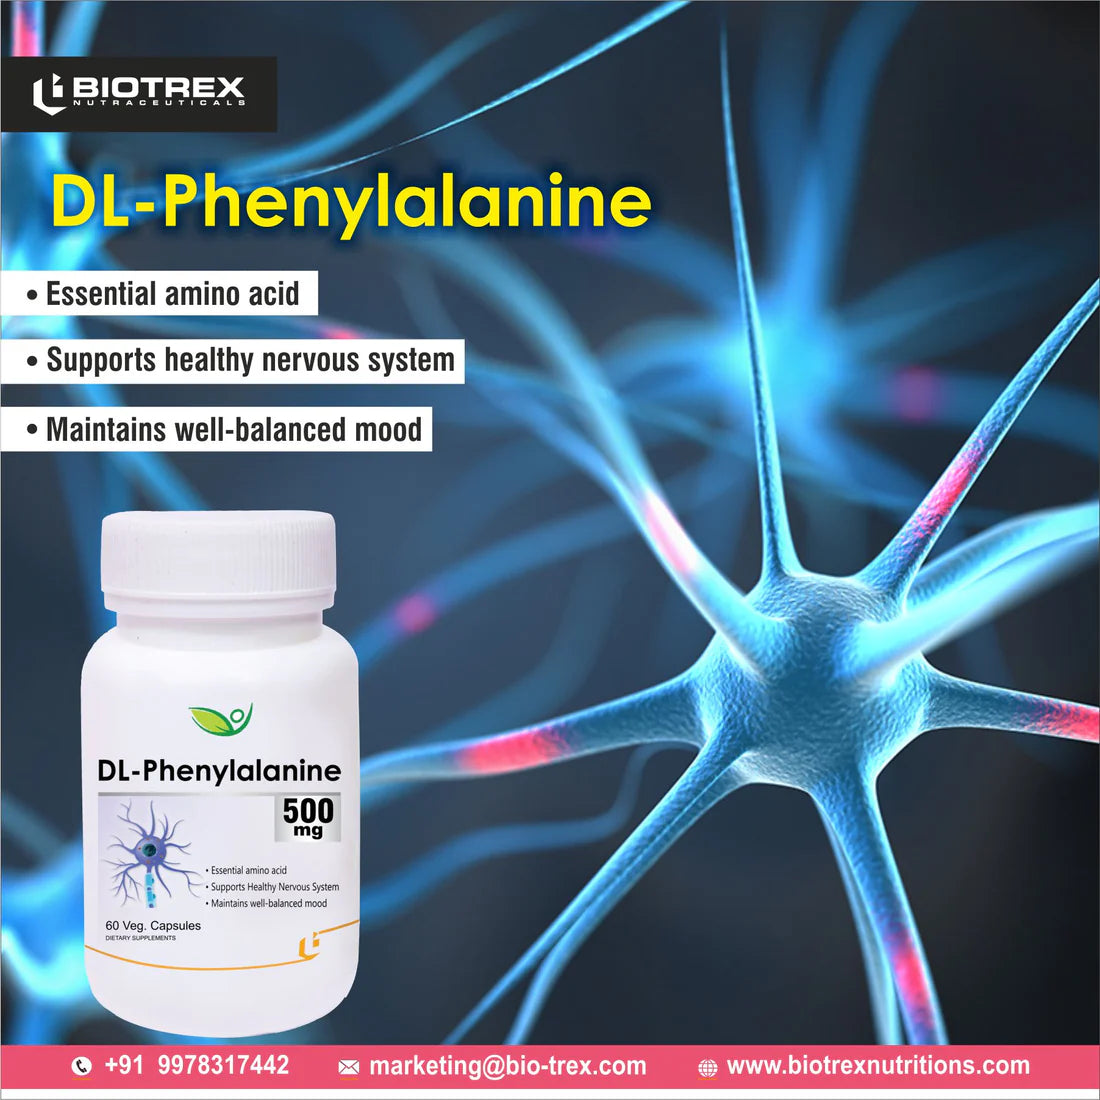 DL-Phenylalanine capsules